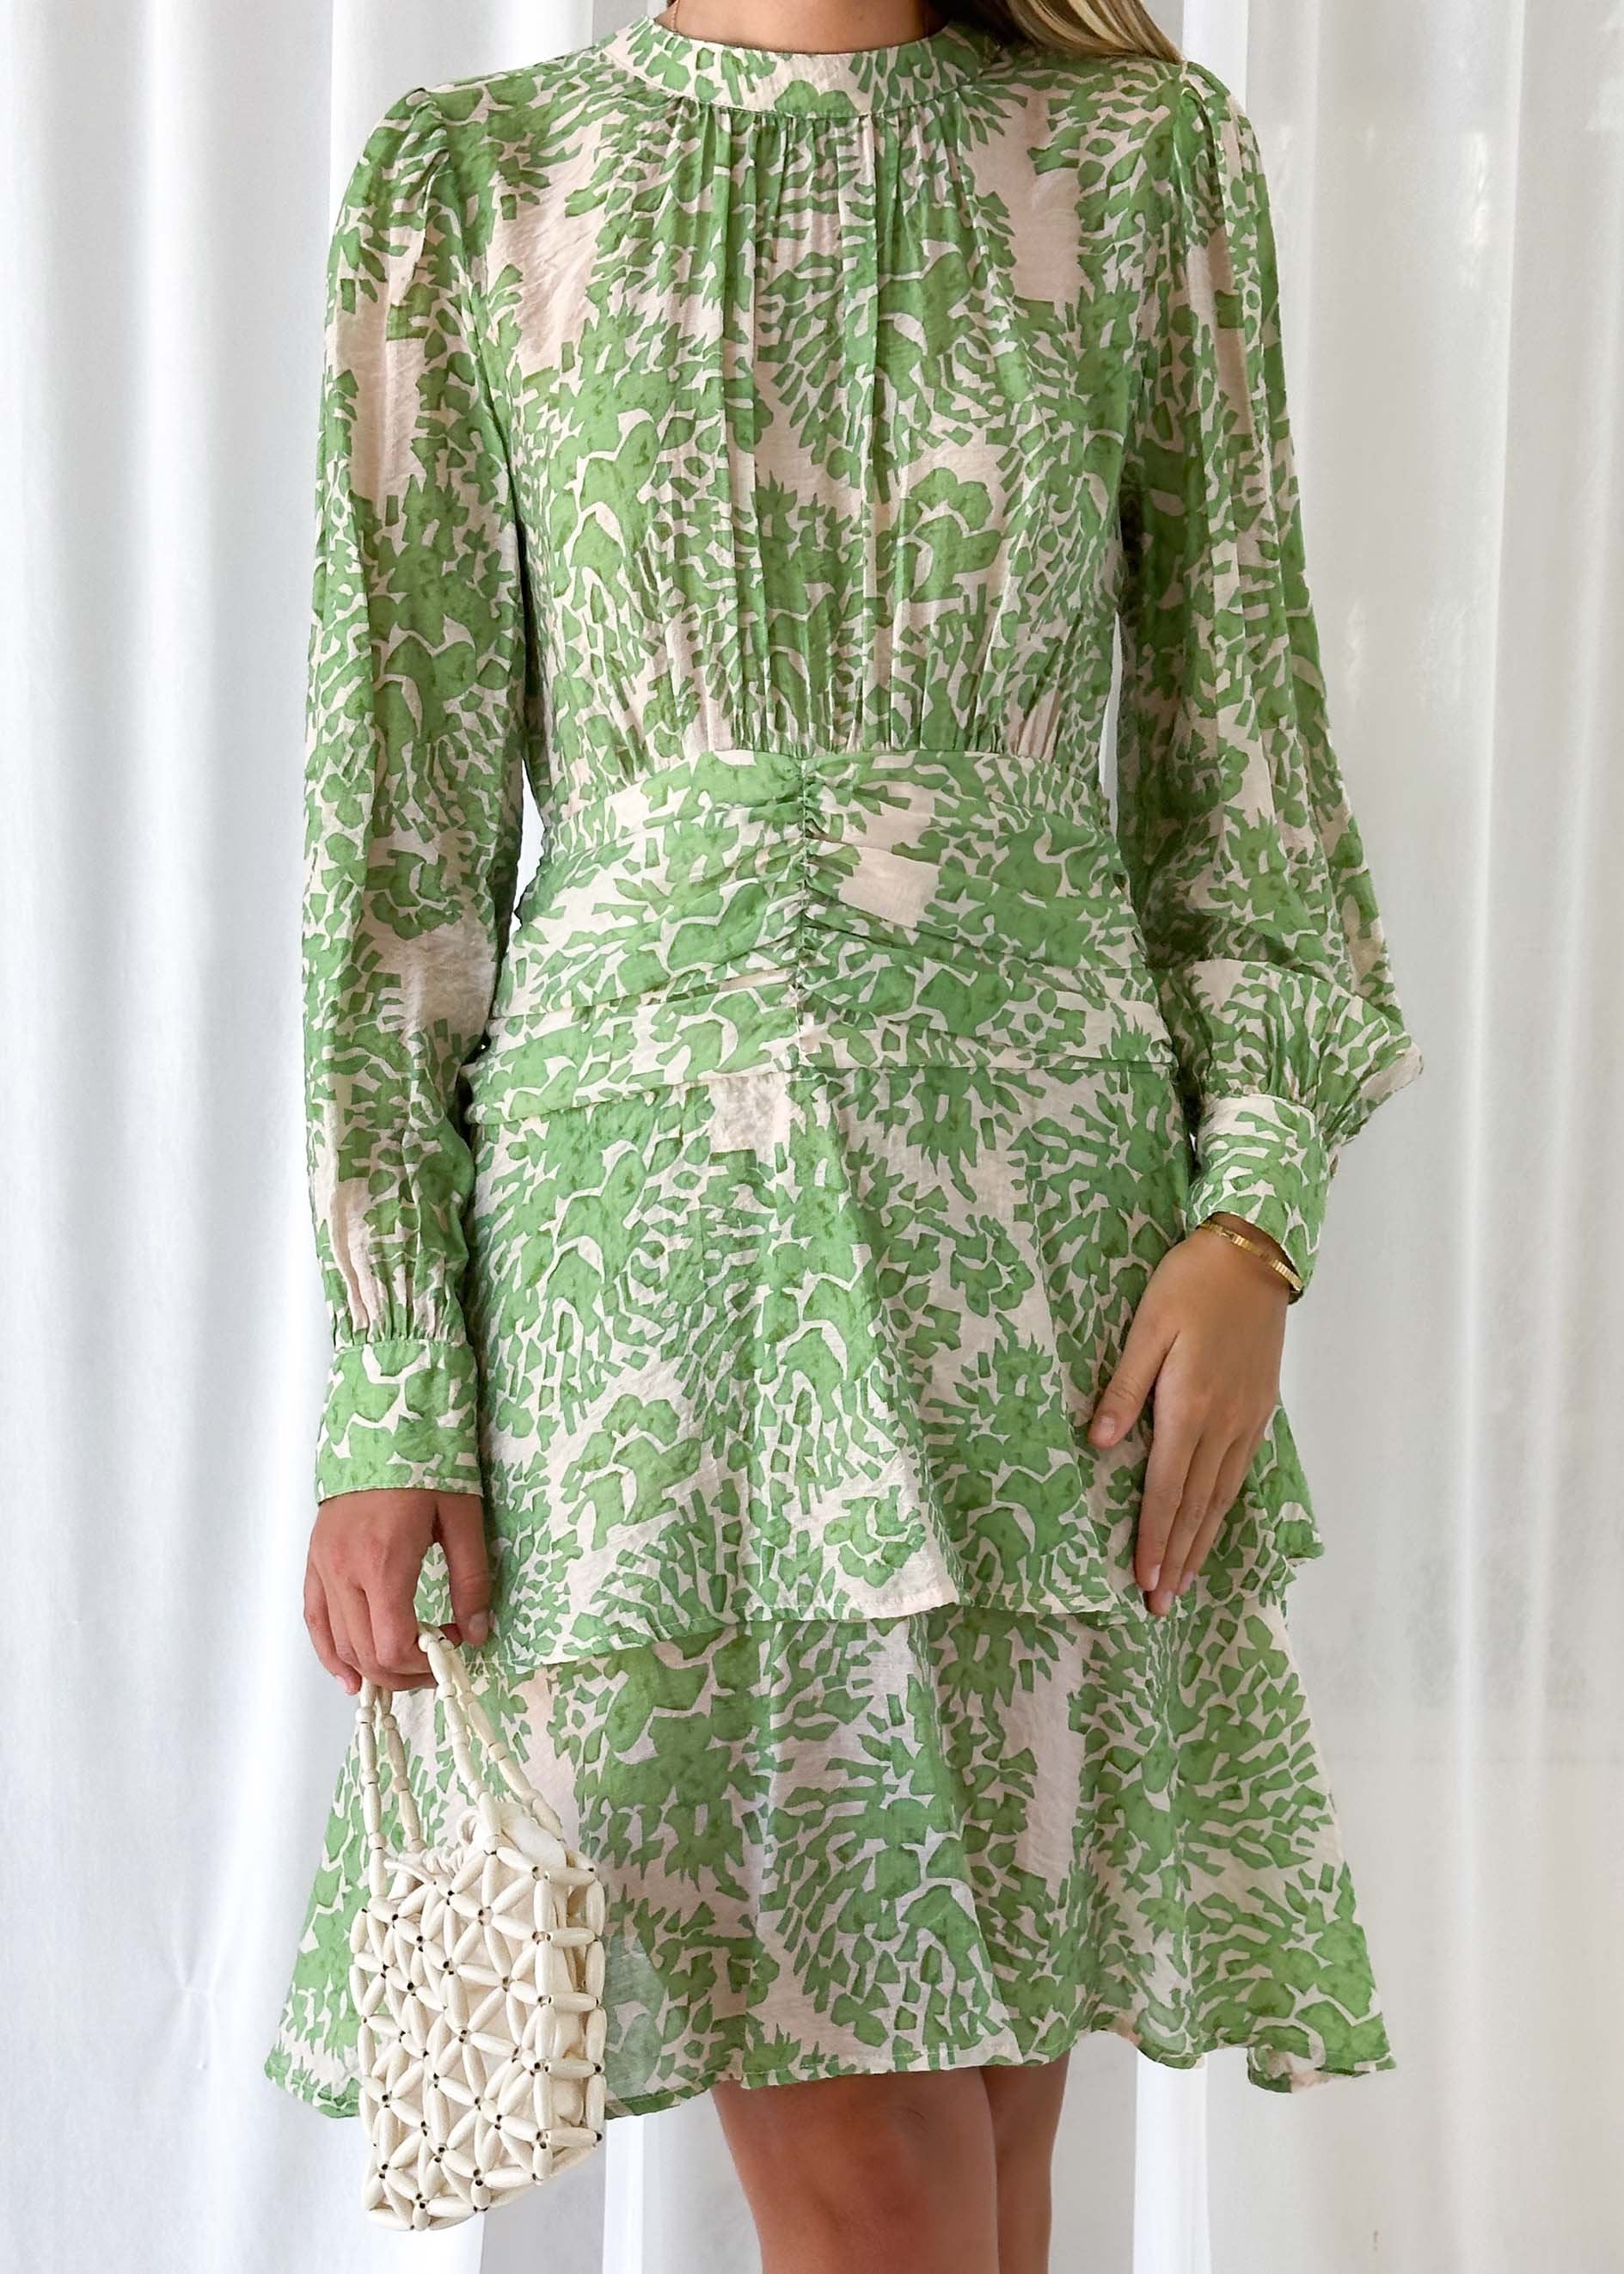 Emmett Dress - Green Abstract